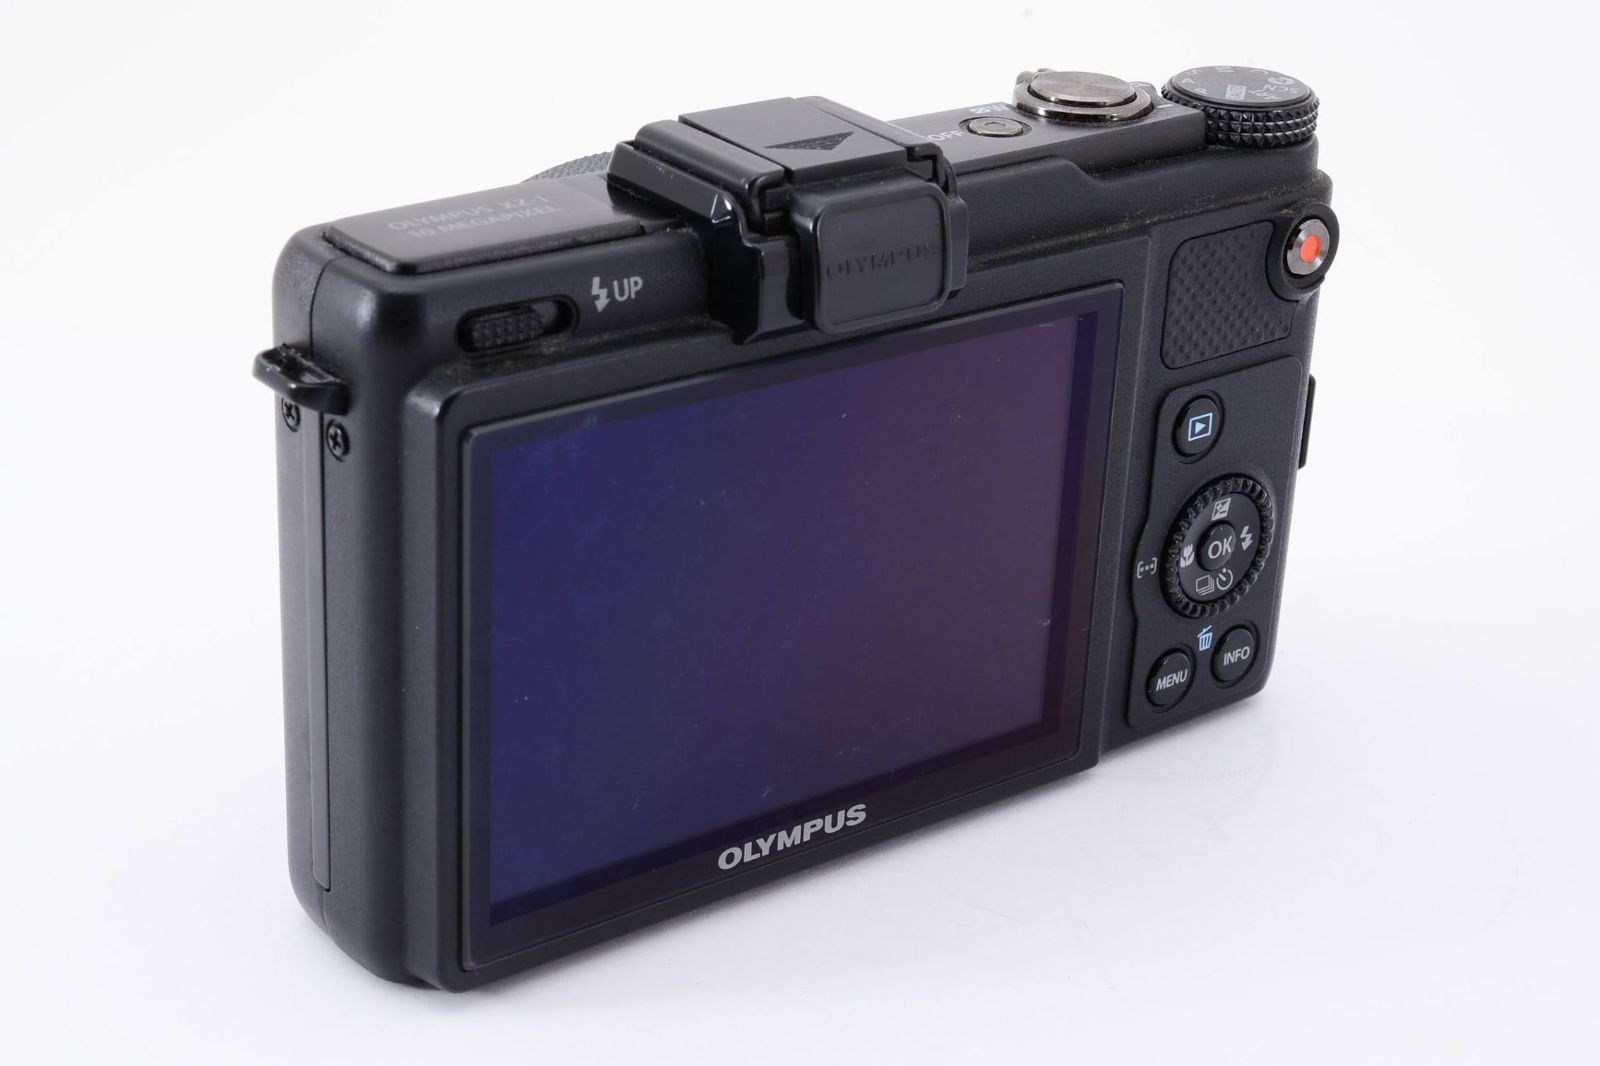 オリンパス Xシリーズ XZ-1 10.0MP デジタルカメラ ブラック［美品